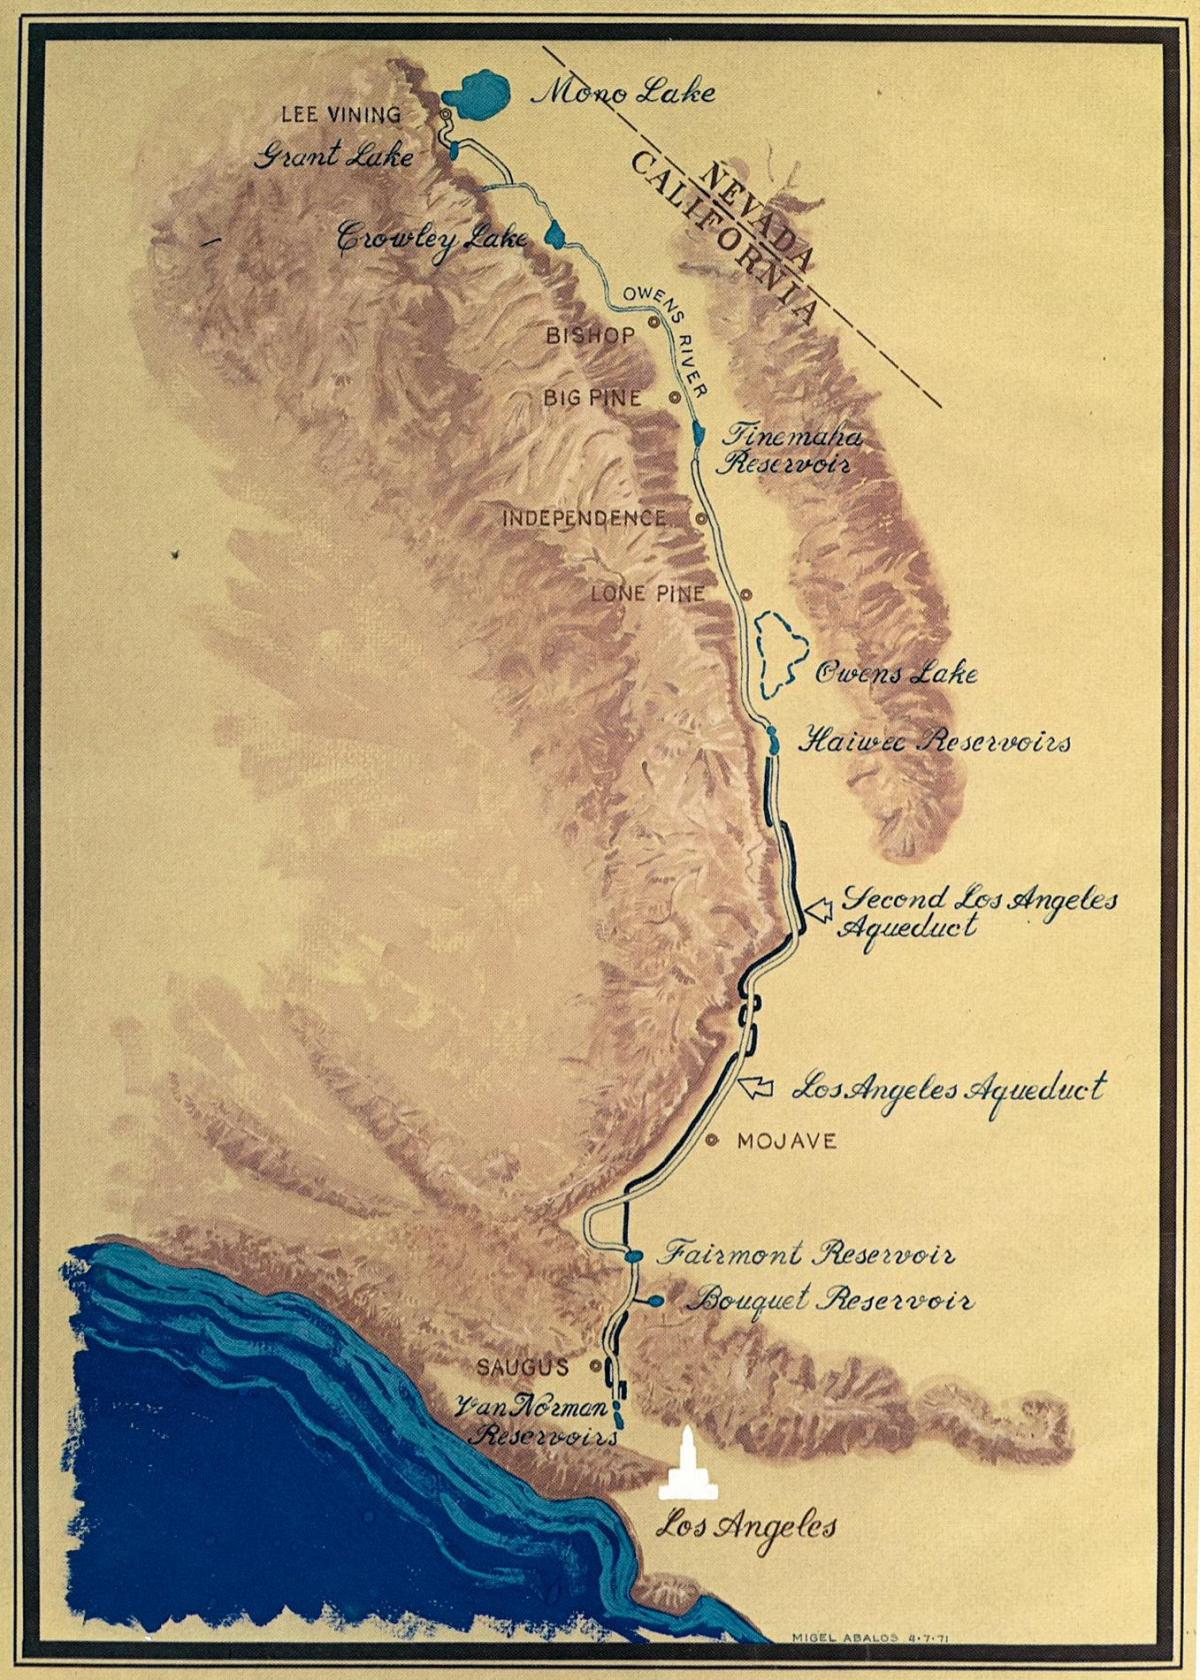 mapa de Los Angeles aqueduto